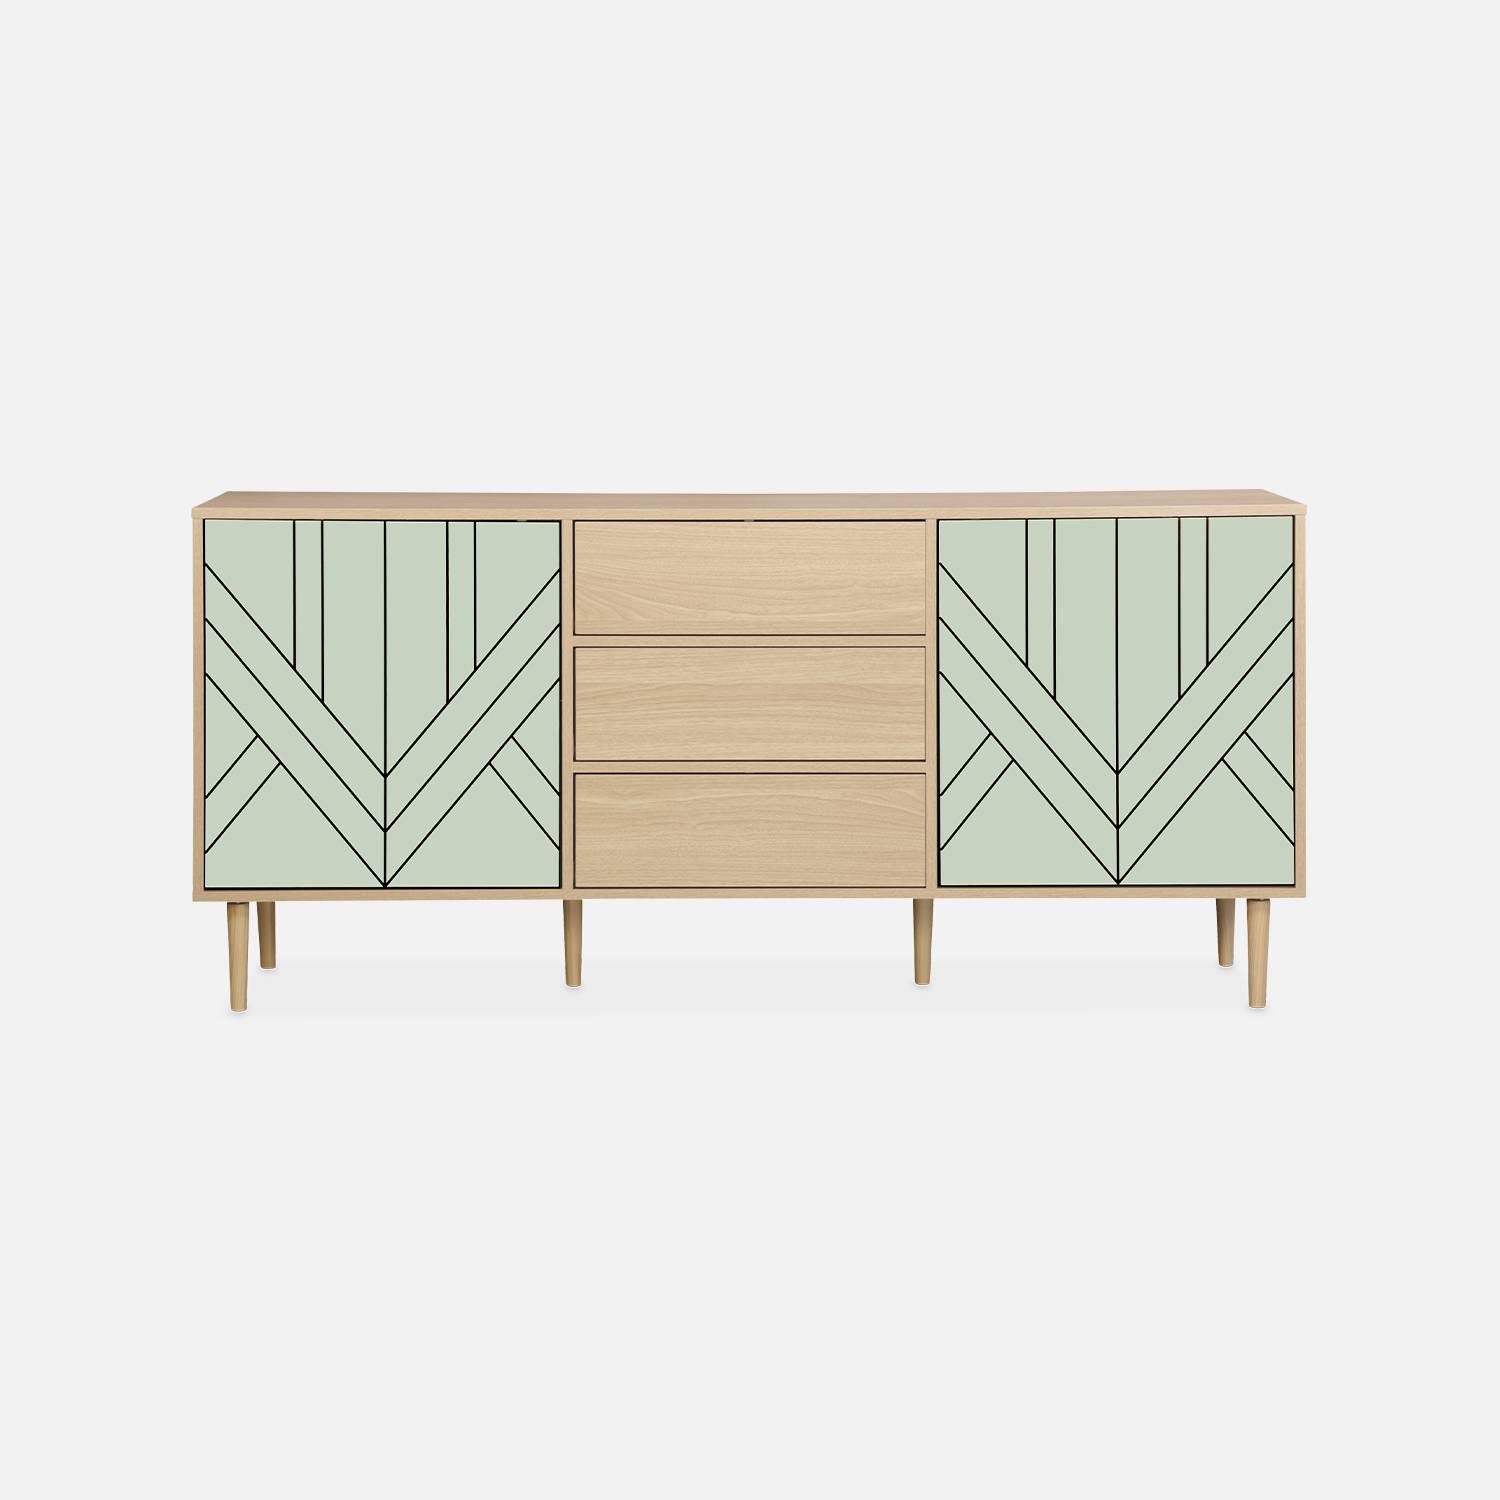 Sideboard in Holzdekor, Farbe Wassergrün - Mika- 2 Ebenen - 2 Türen- 3 Schubladen. L 160 x B 40 x H 74 cm Photo3